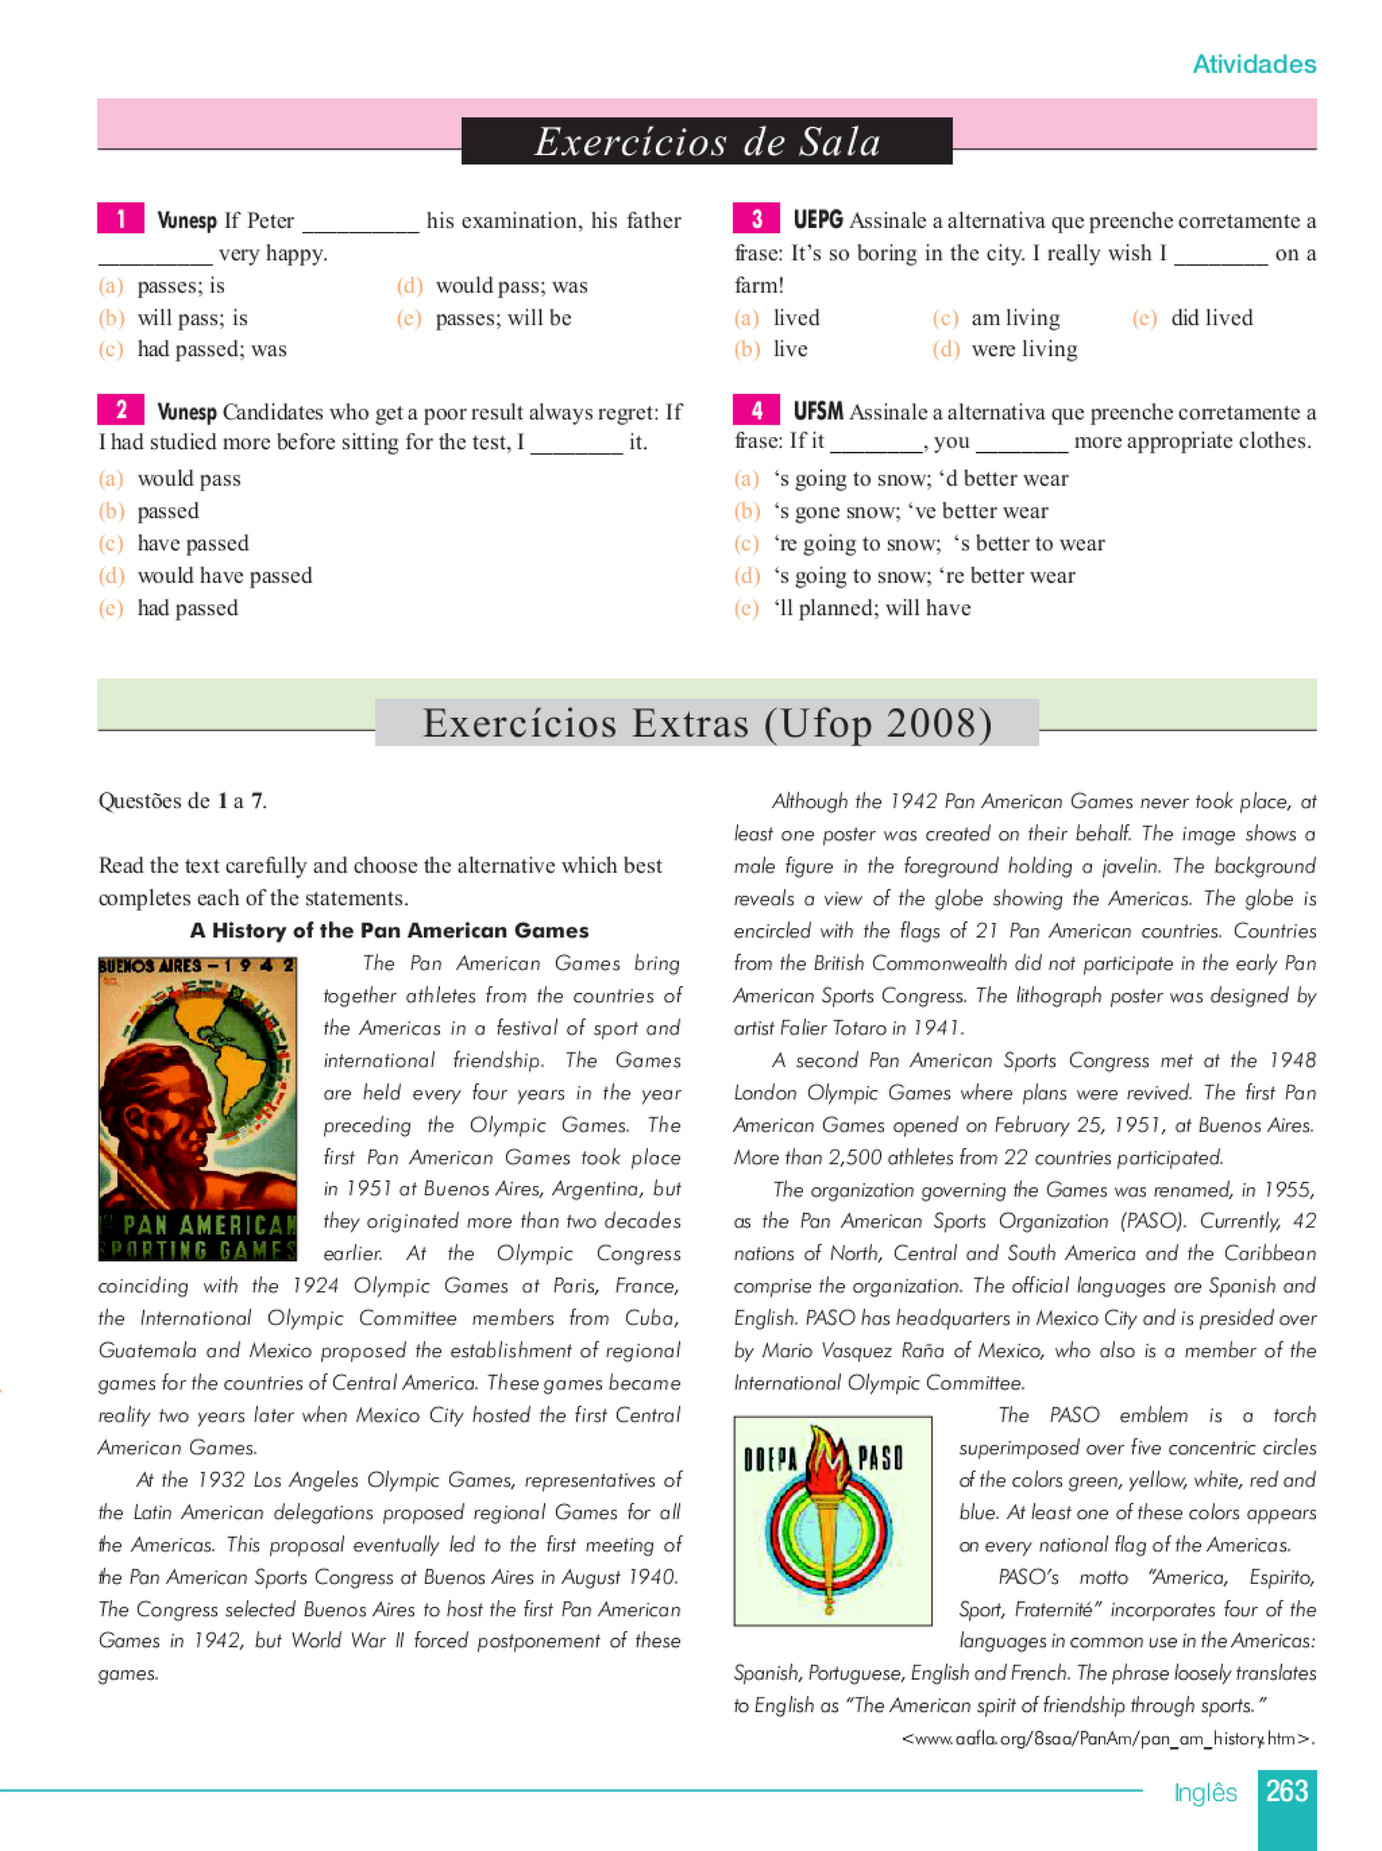 My publications - Inglês - Página 264-265 - Created with Publitas.com